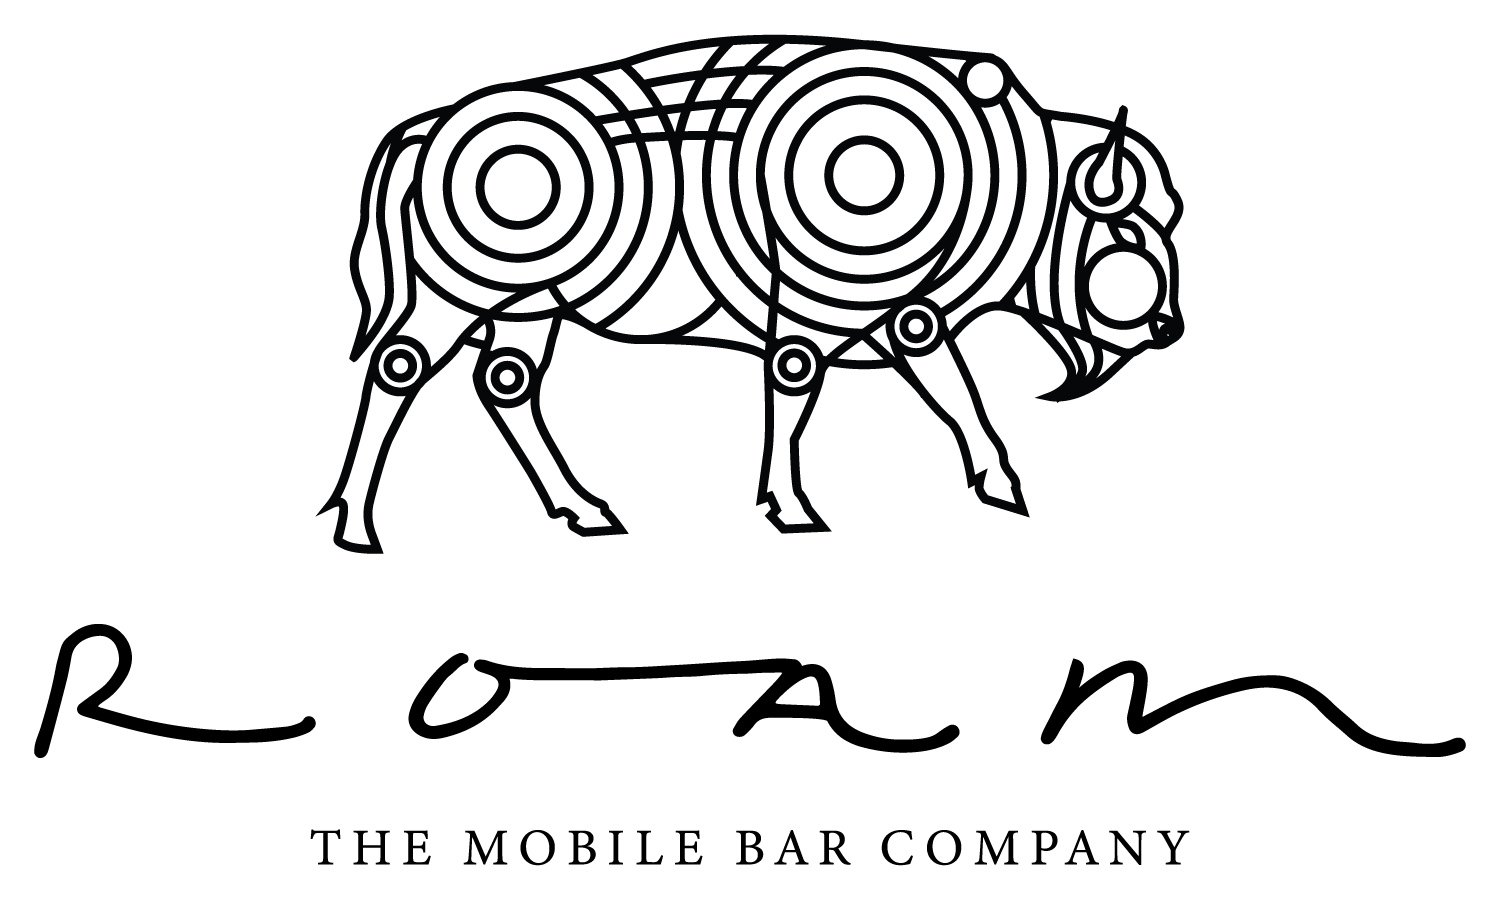 ROAM The Bar